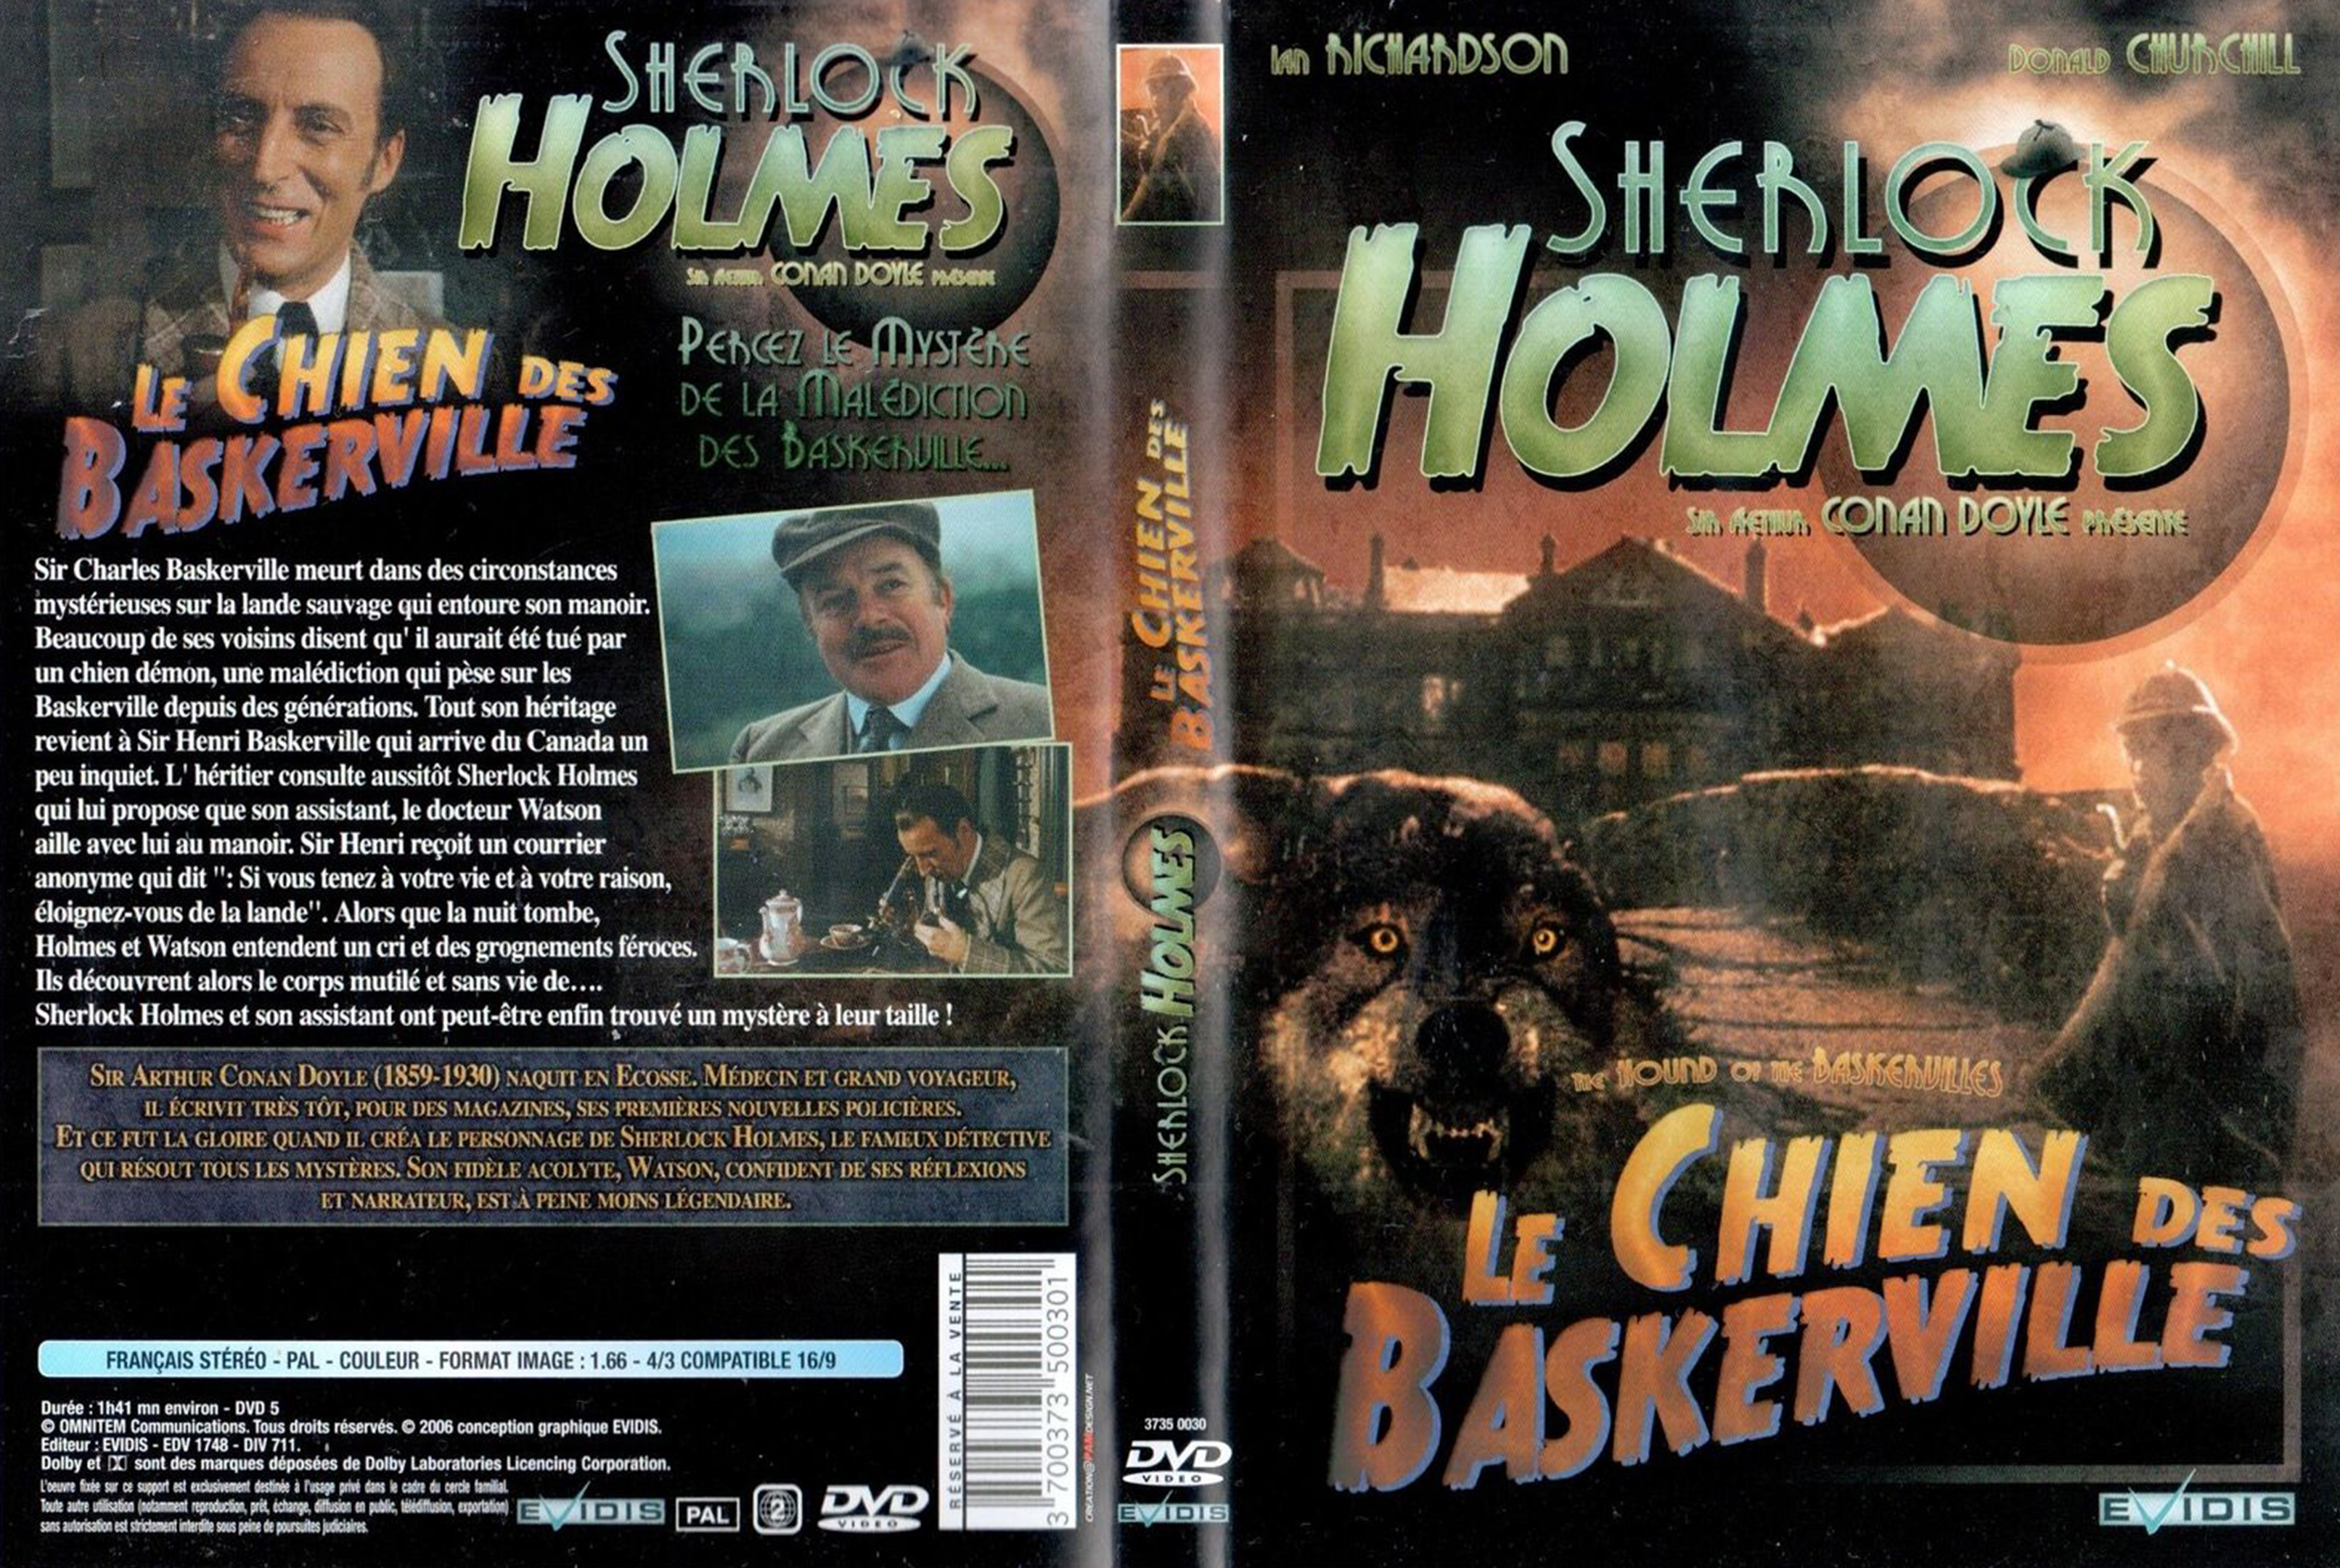 Jaquette DVD Sherlock Holmes - Le chien des Baskerville